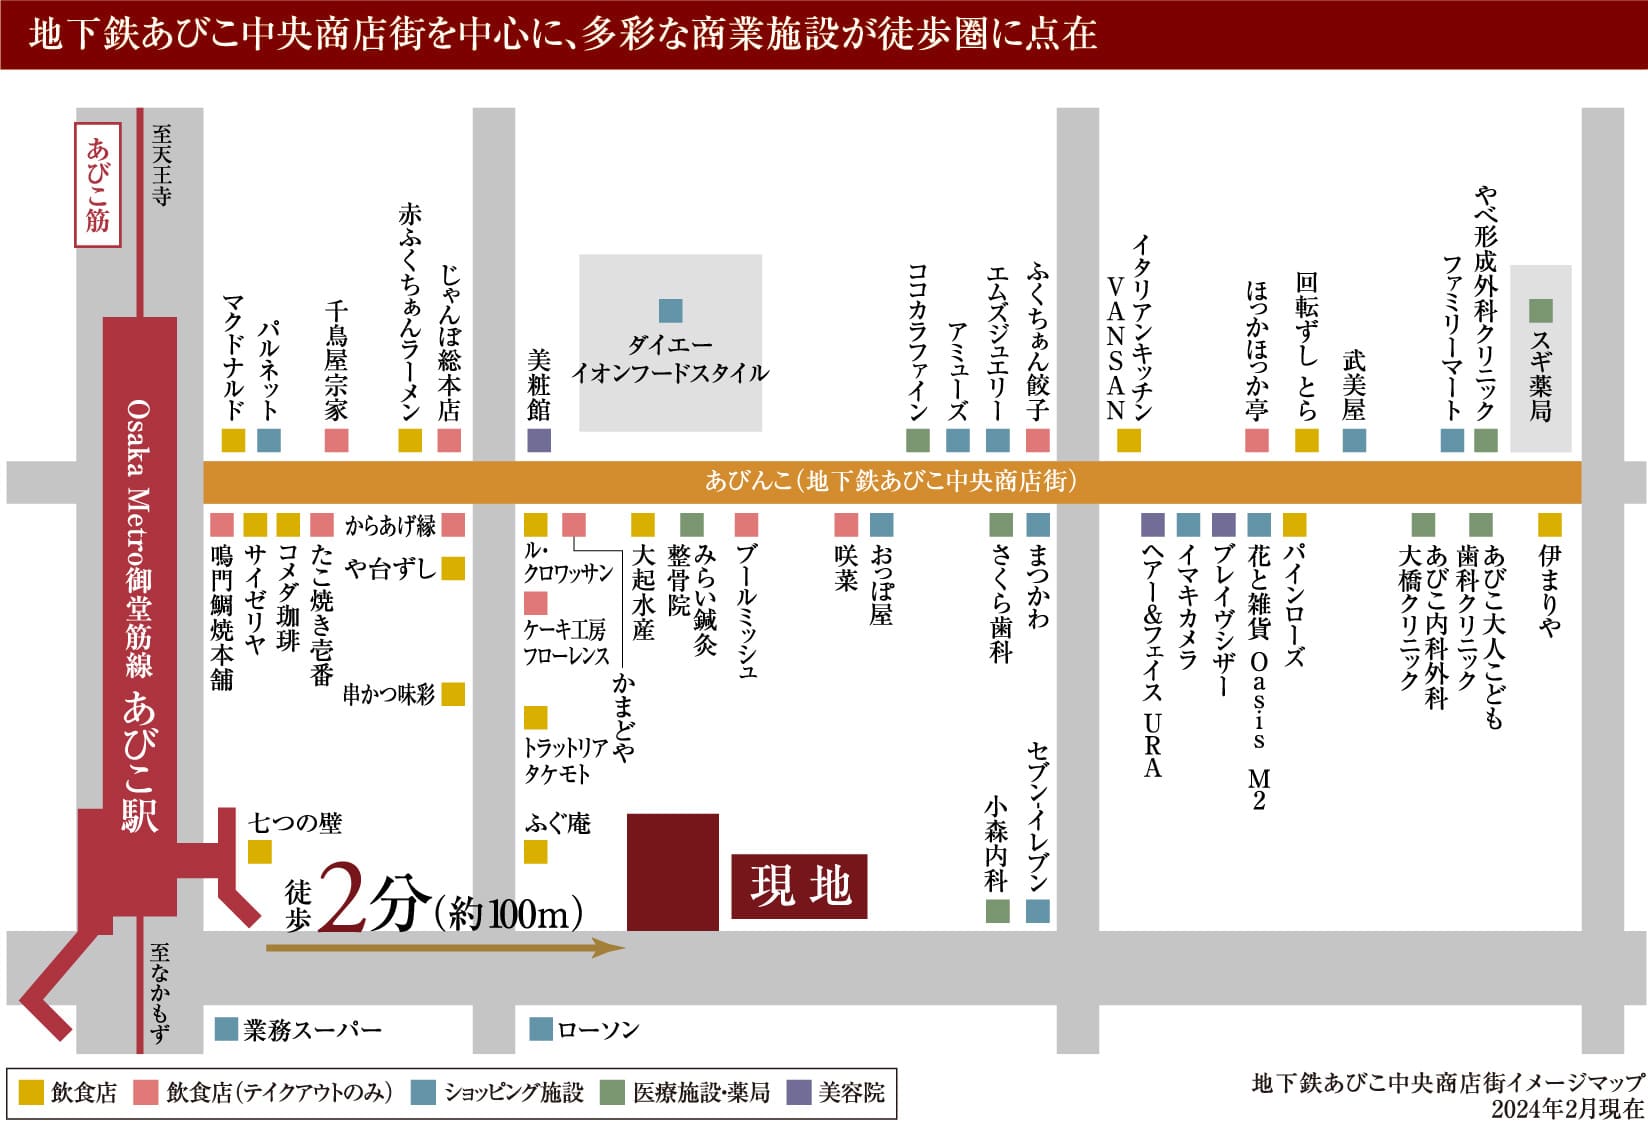 地下鉄あびこ中央商店街イメージマップ